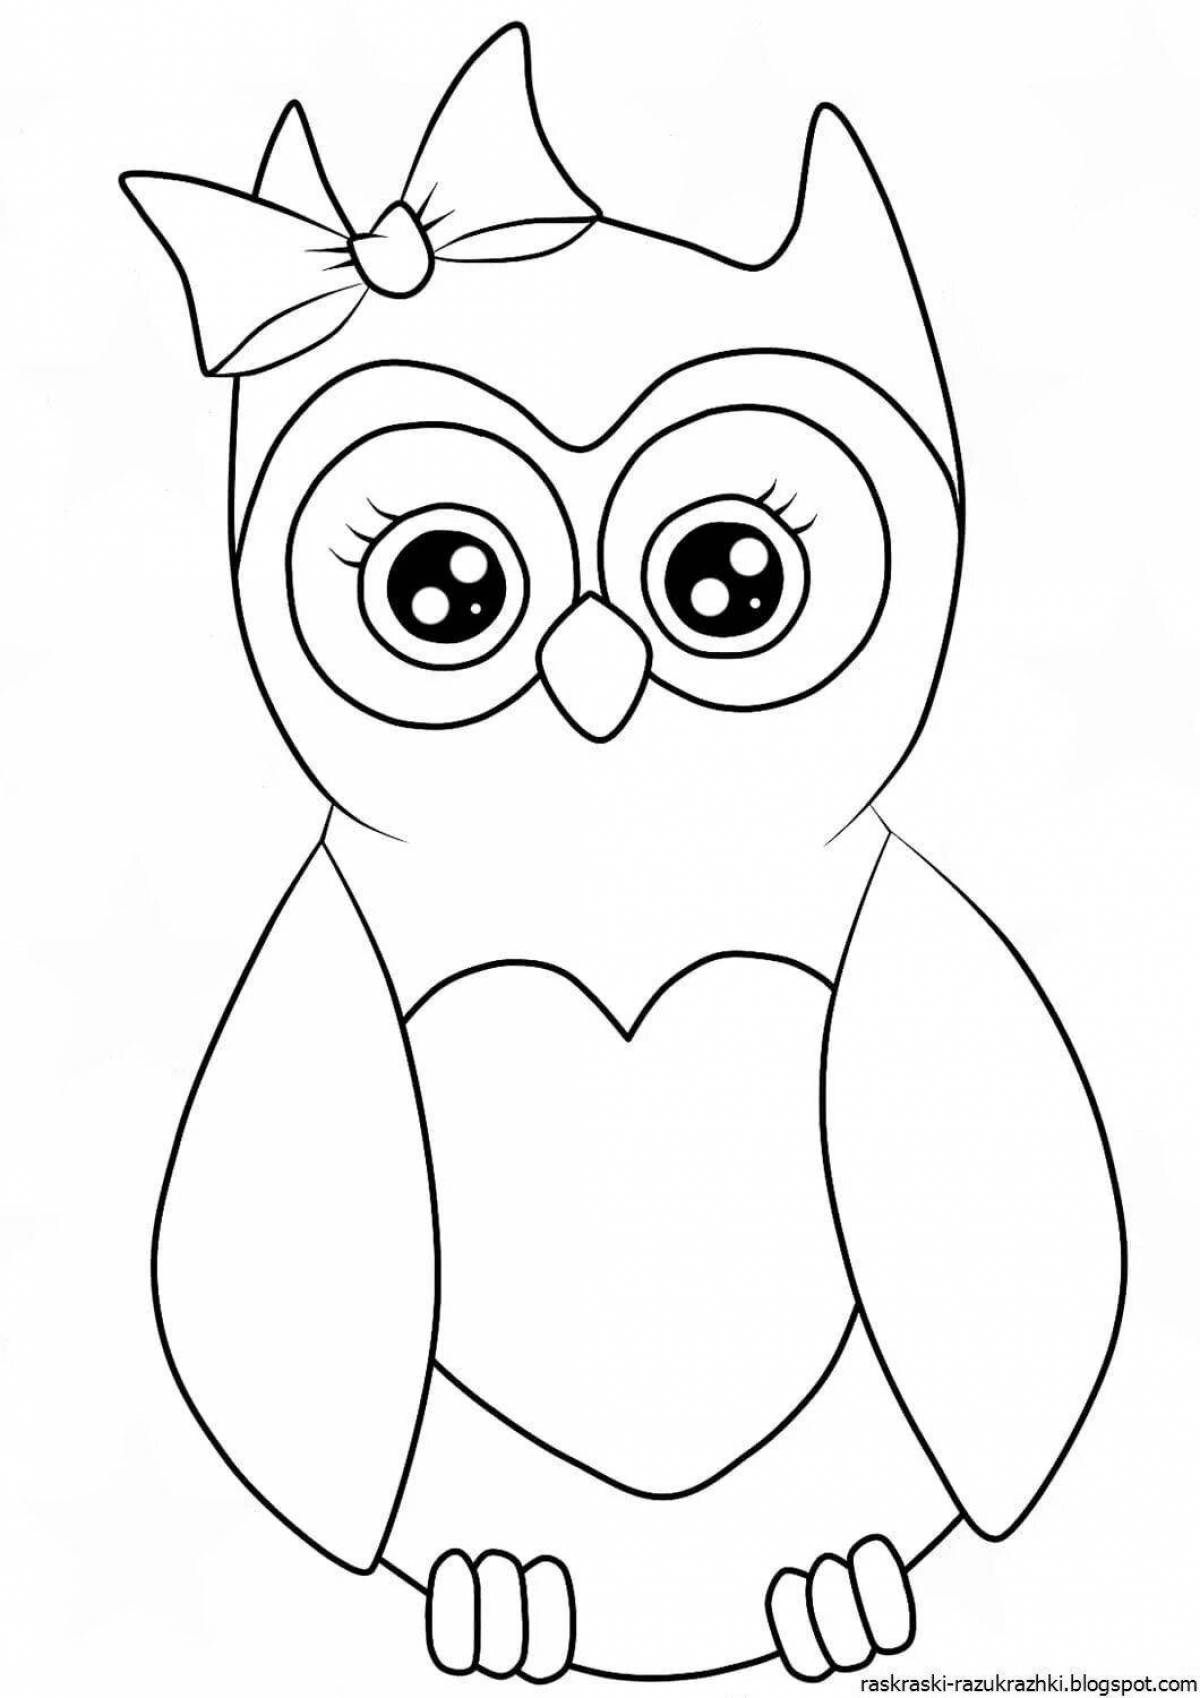 Humorous cute owl coloring book